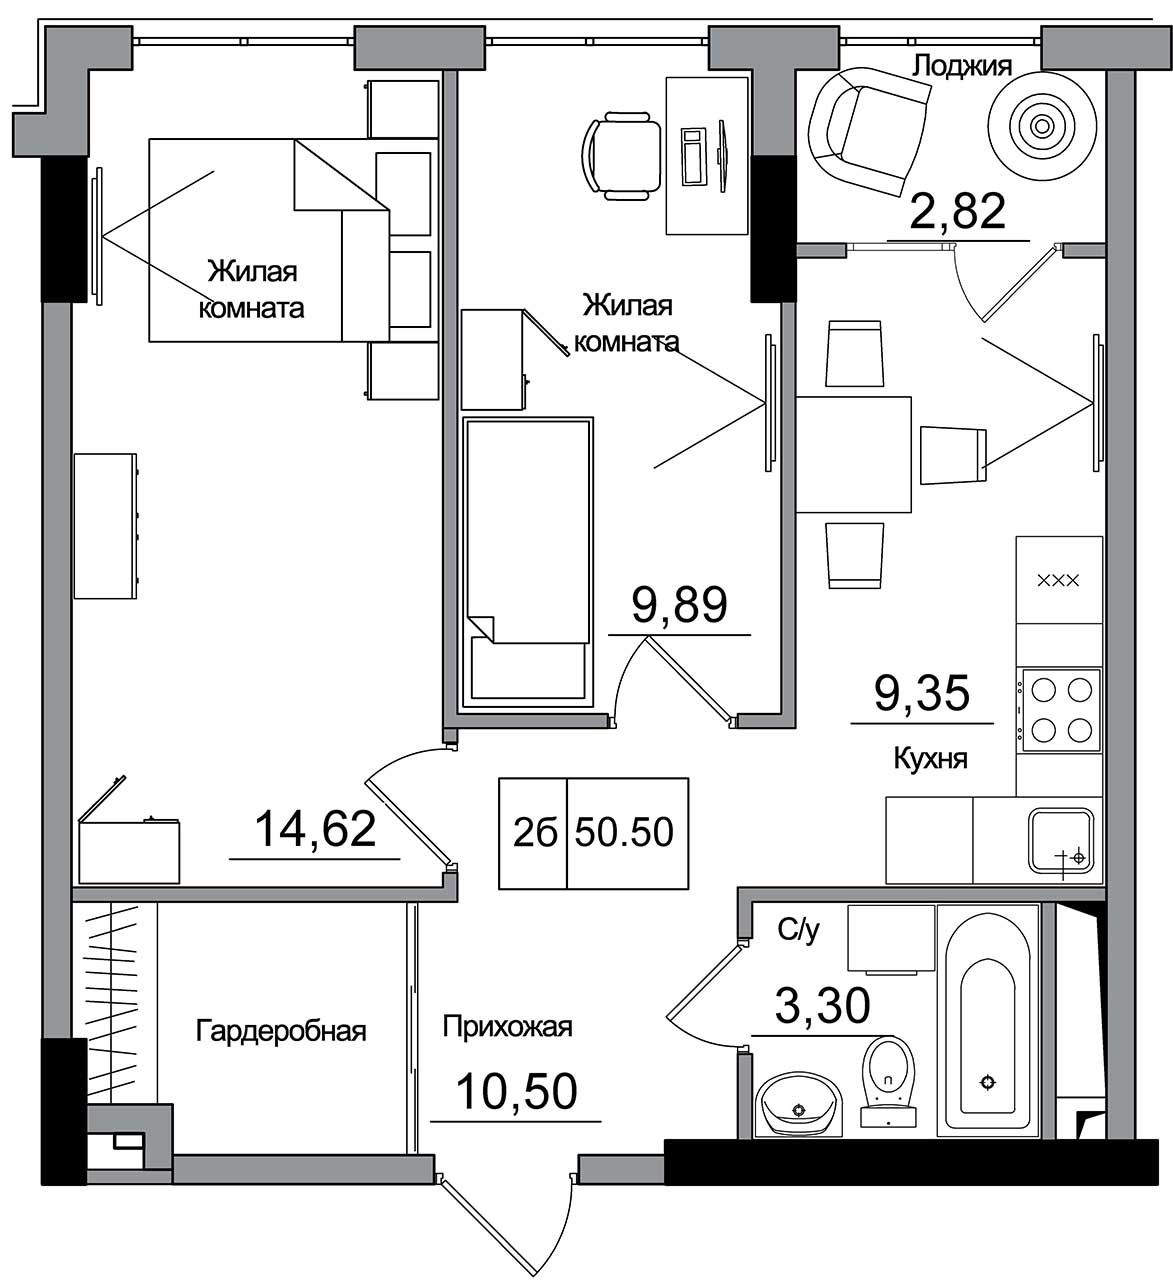 Планировка 2-к квартира площей 50.5м2, AB-16-05/00007.